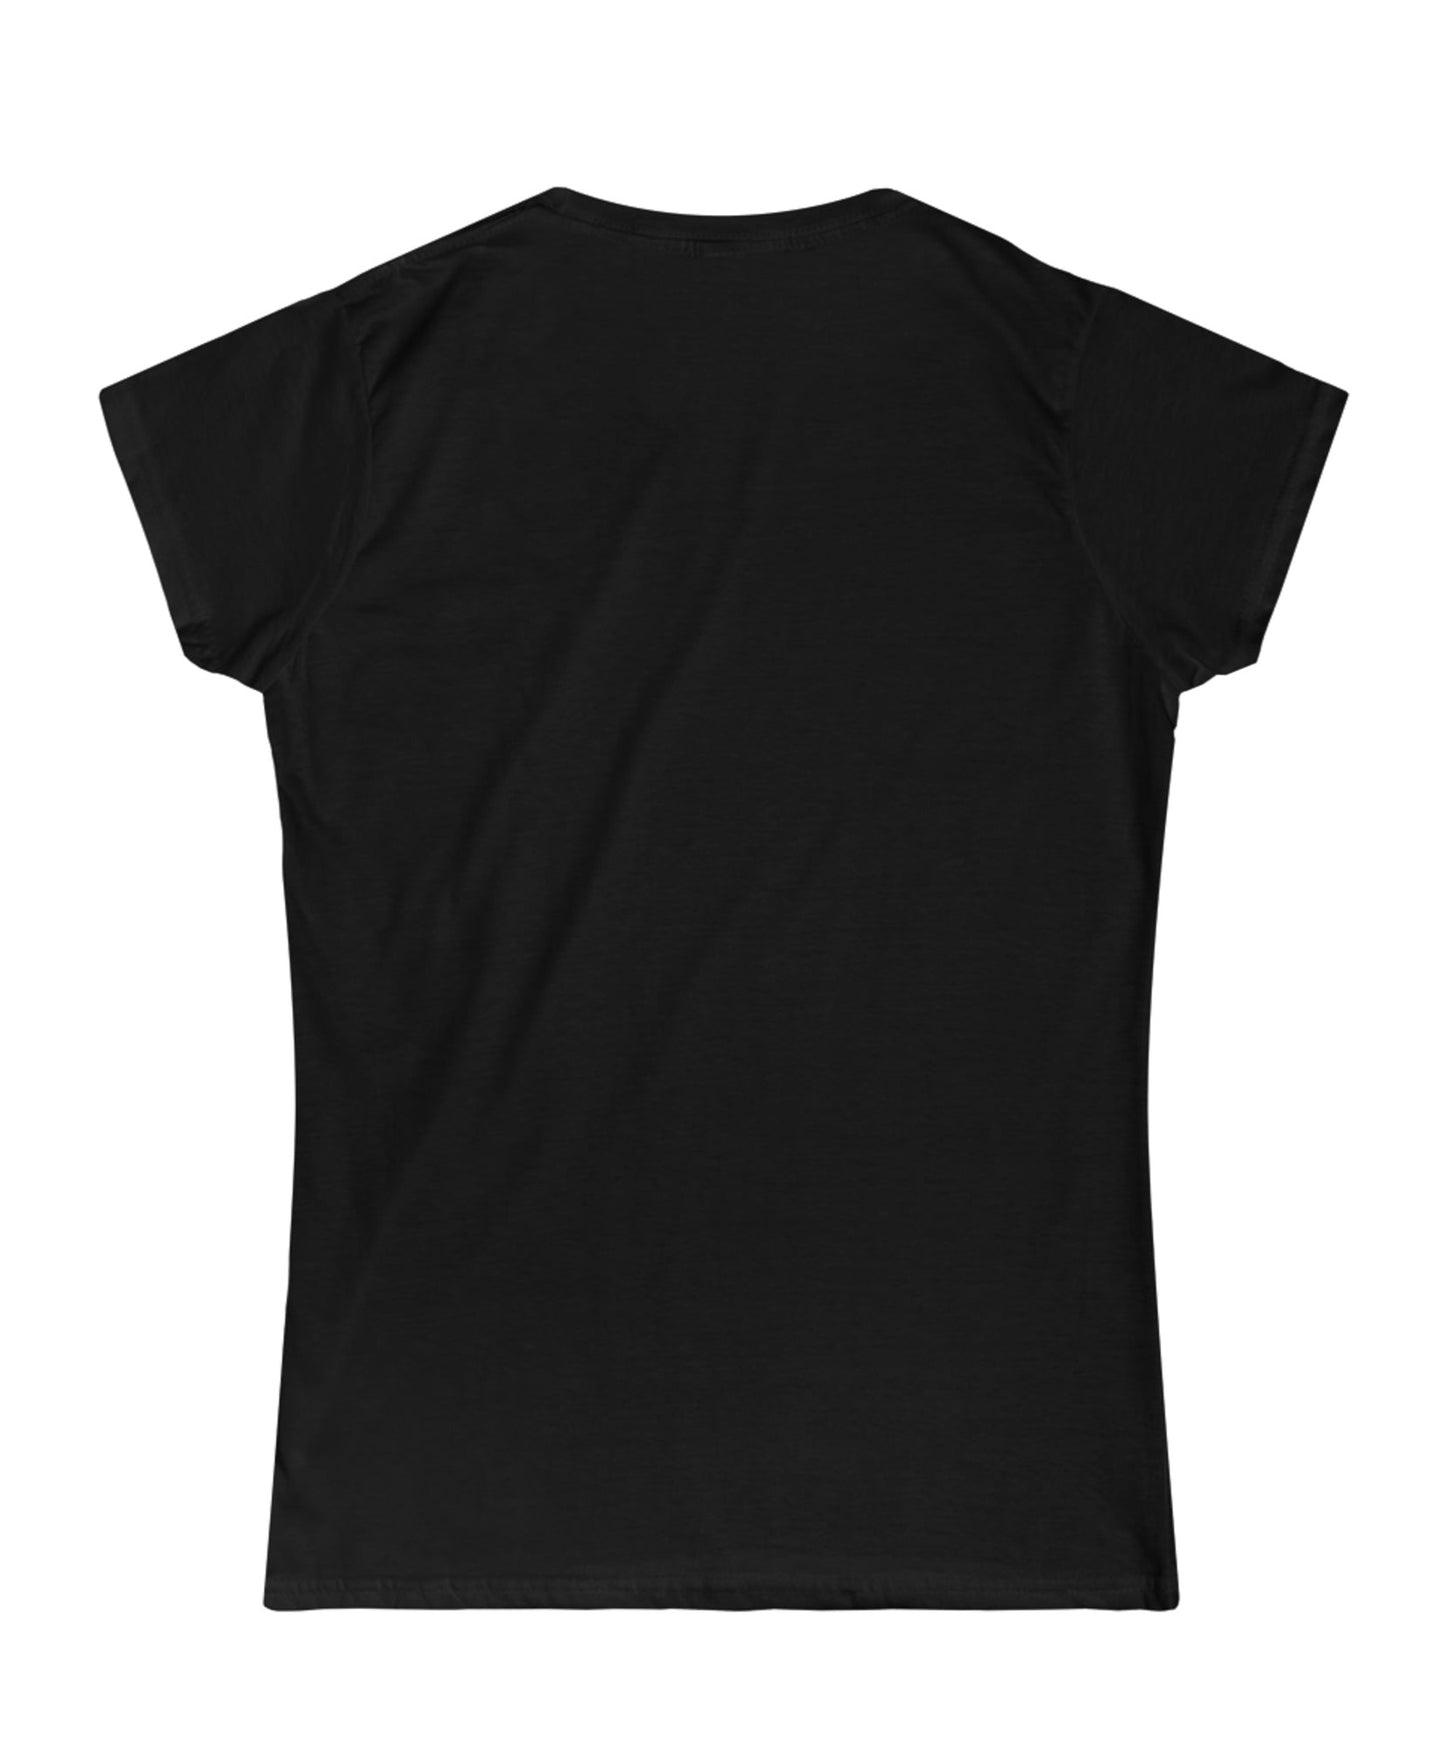 'Black Entrepreneur Movement' Women's Short Sleeve T-Shirt